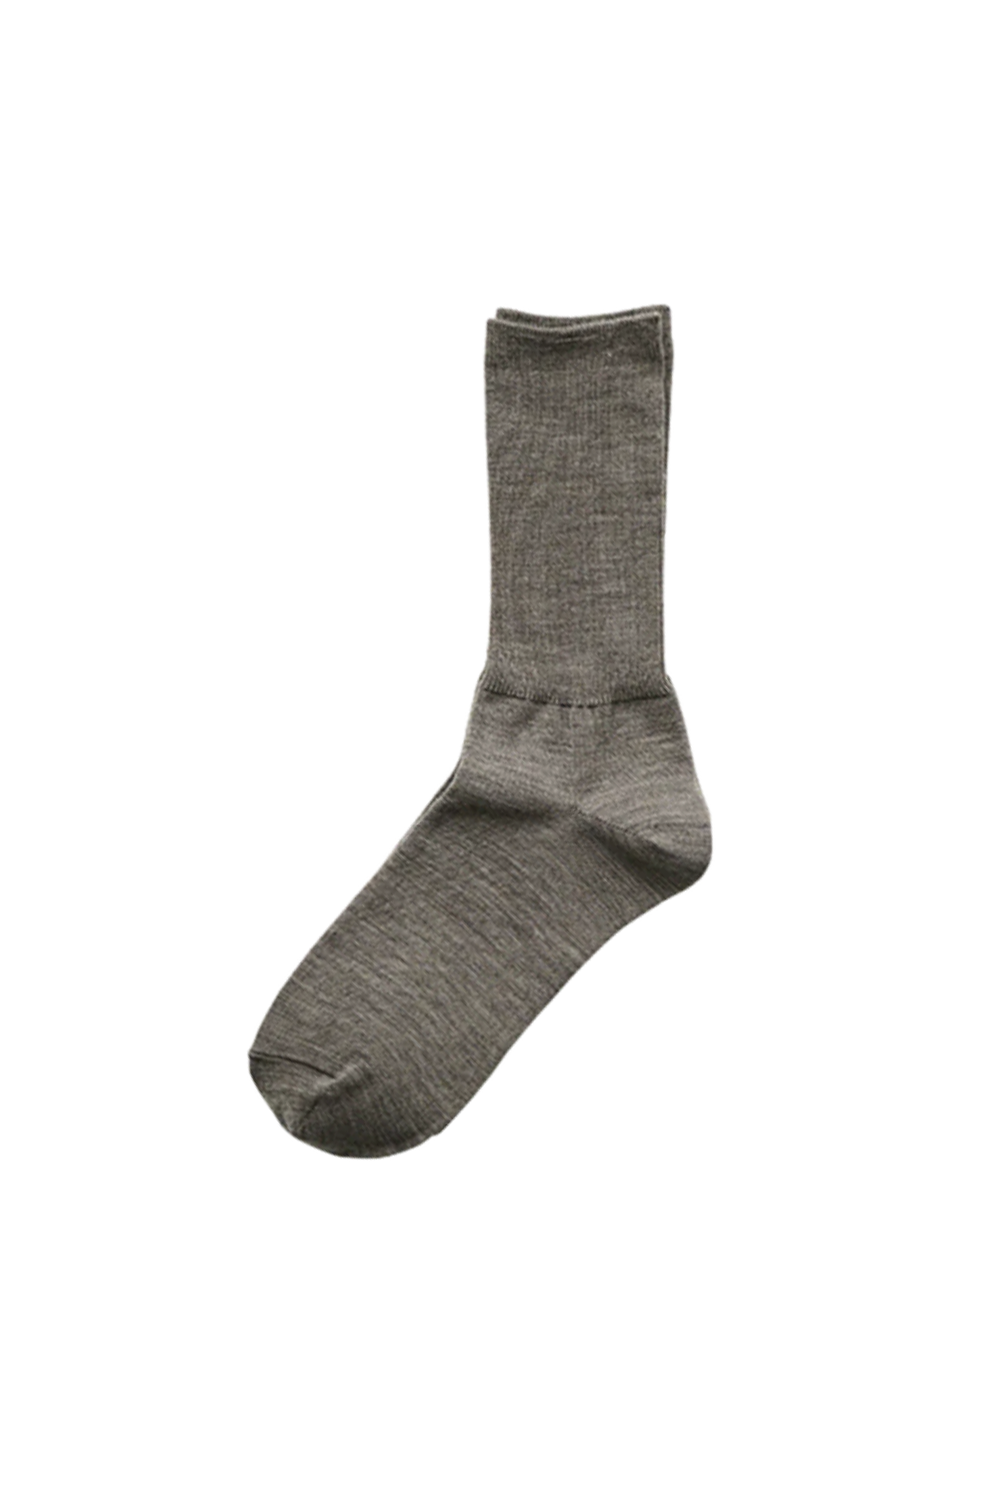 HK0104 Merino Wool Ribbed Socks, Oatmeal